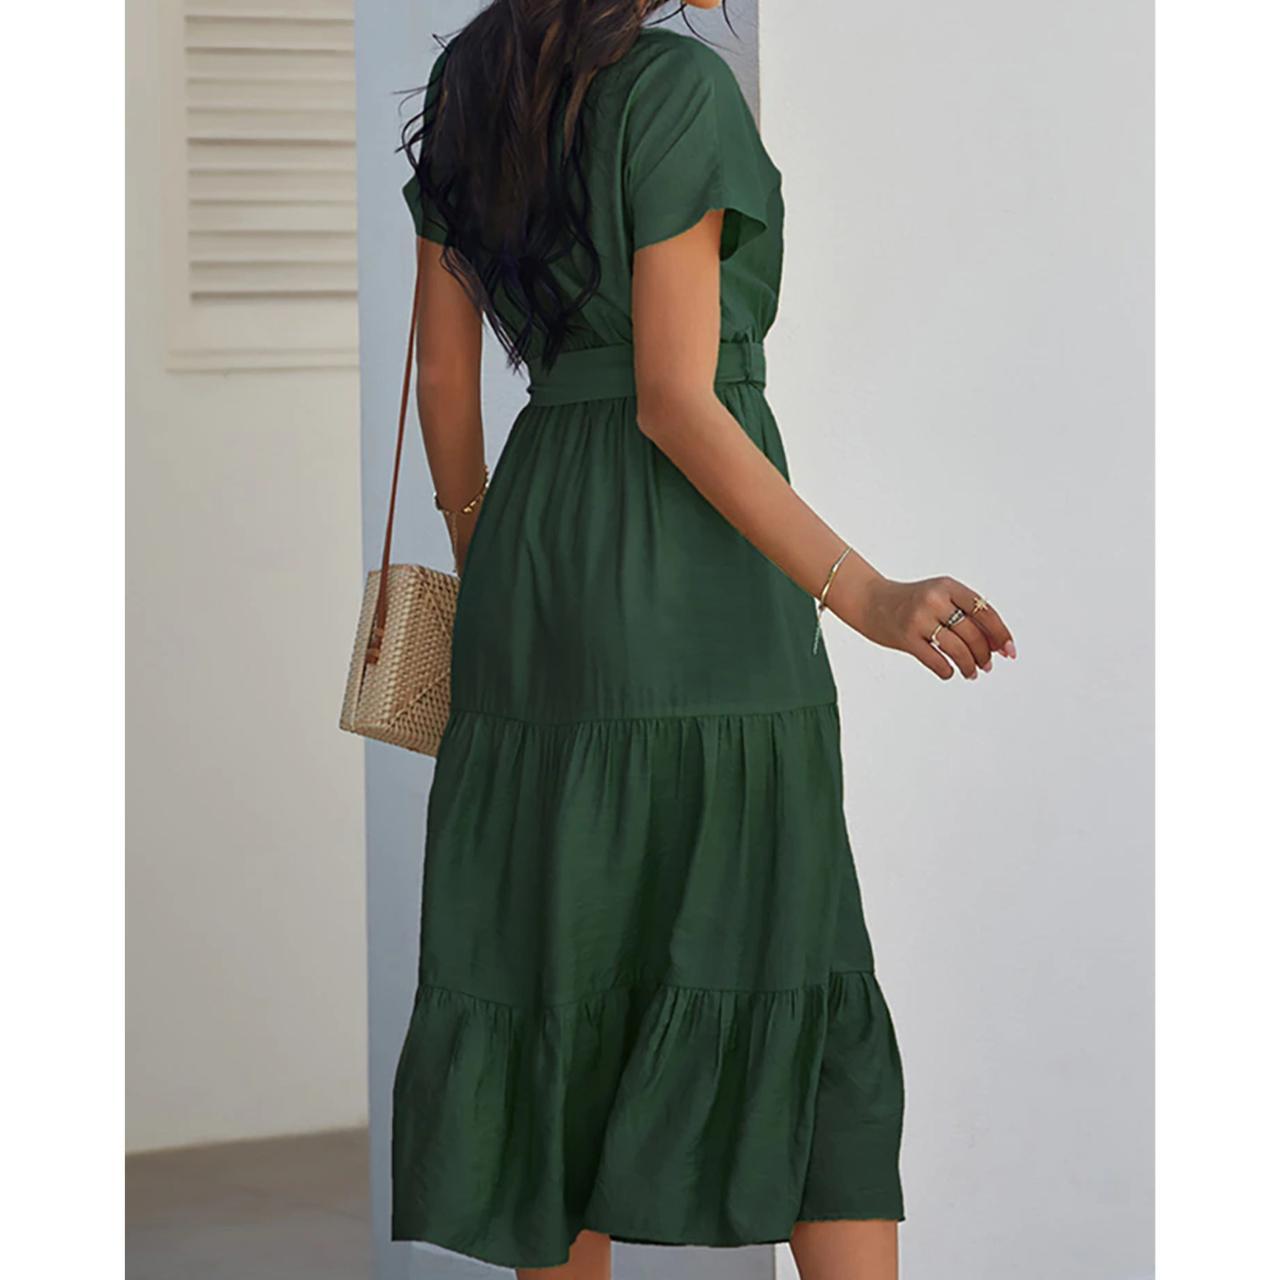 Summer Fashion Long Dress for Women Vintage Solid... - Depop